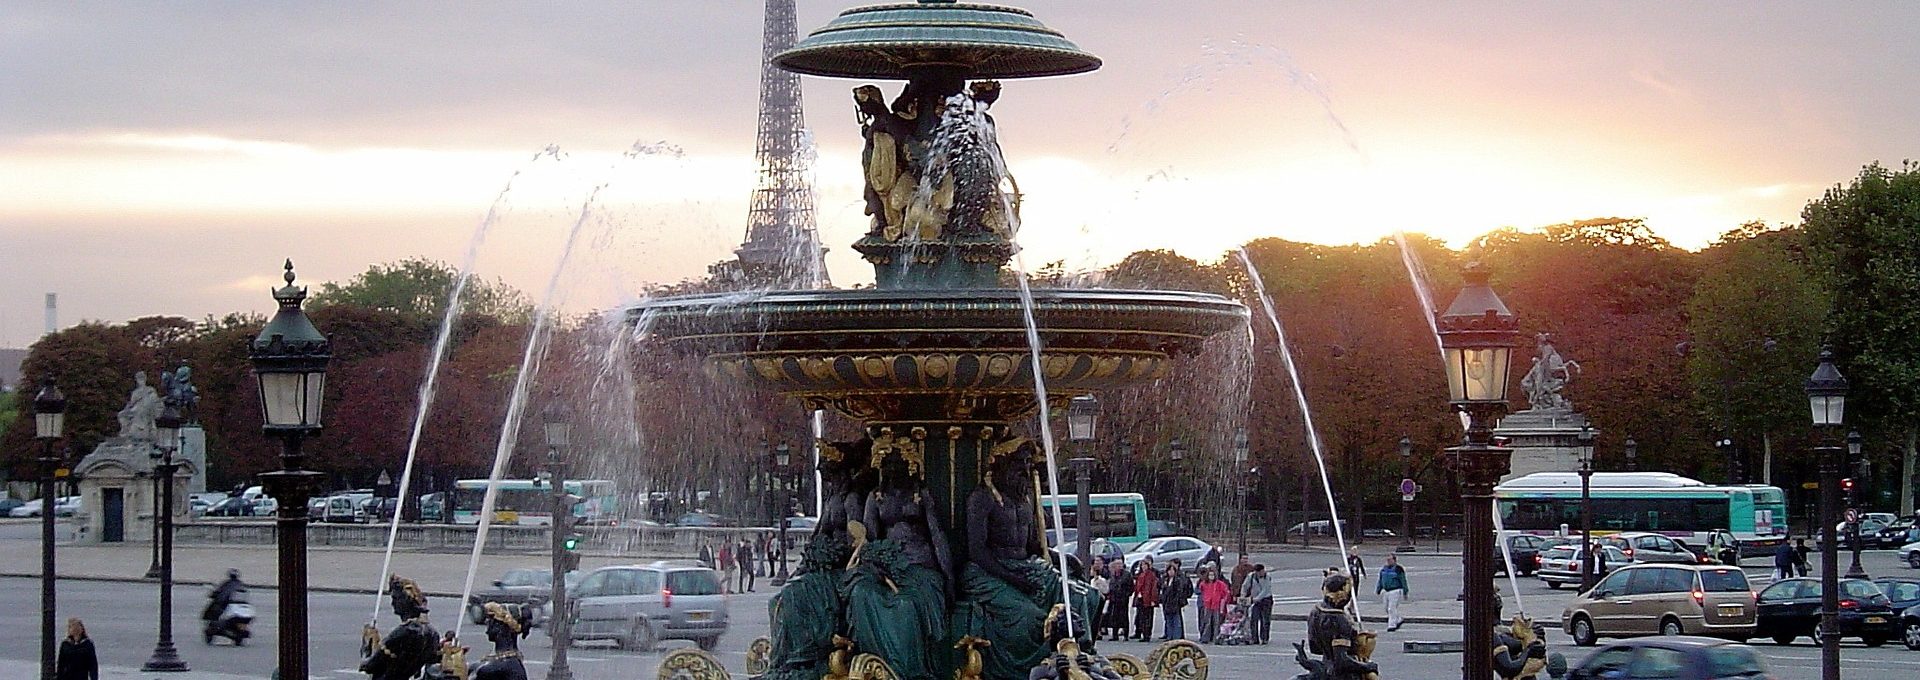 Place de la Concorde em Paris